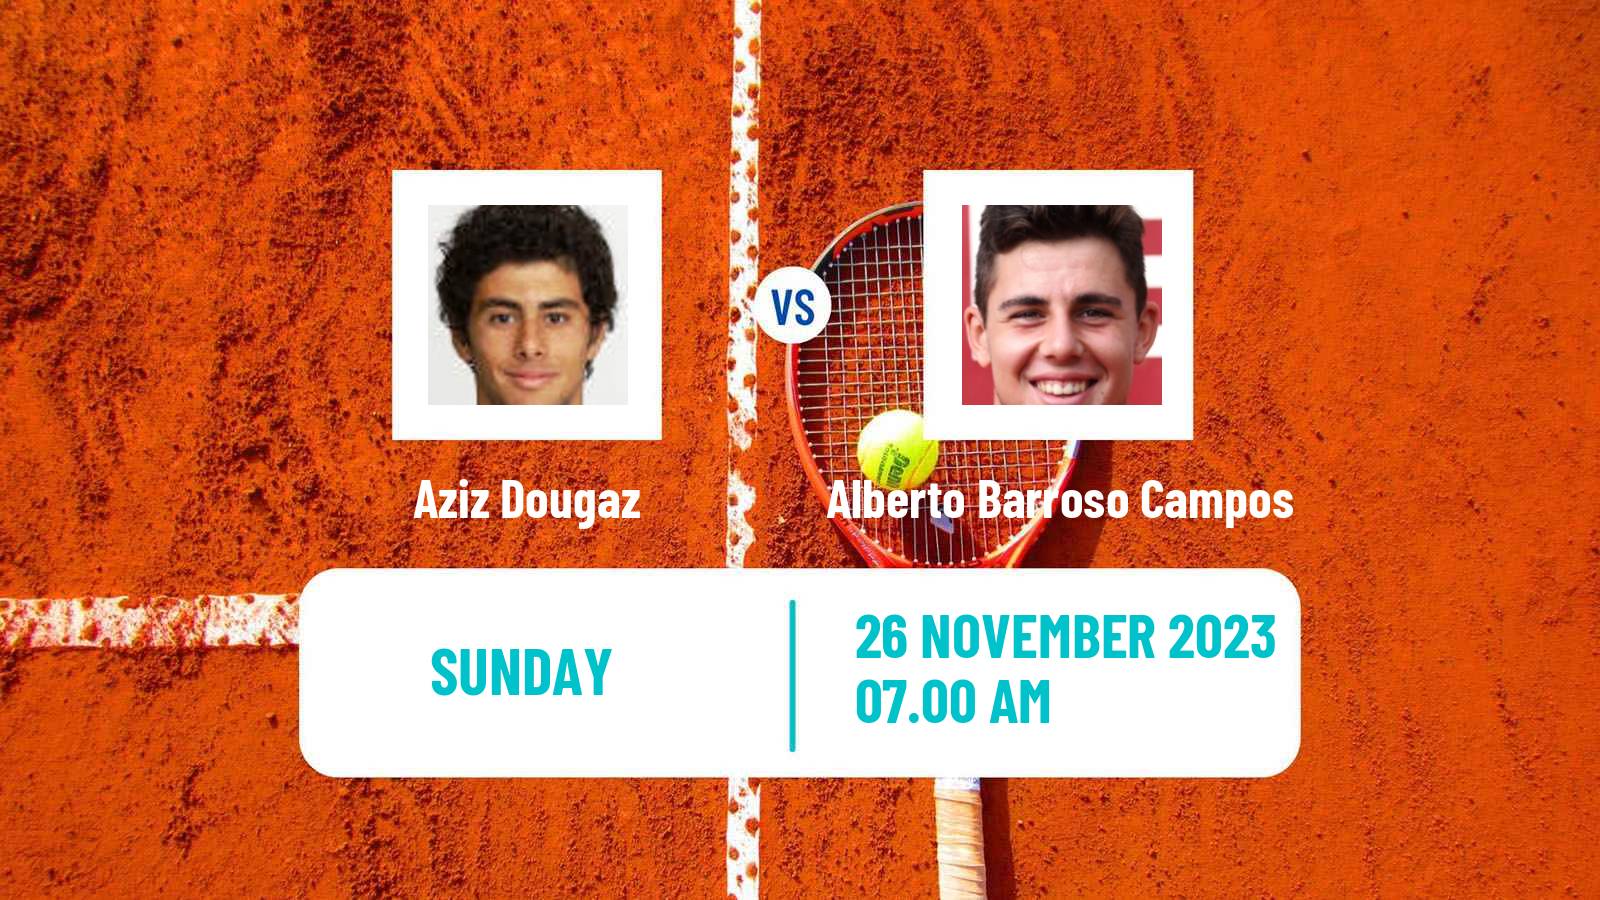 Tennis ITF M25 Monastir 9 Men Aziz Dougaz - Alberto Barroso Campos